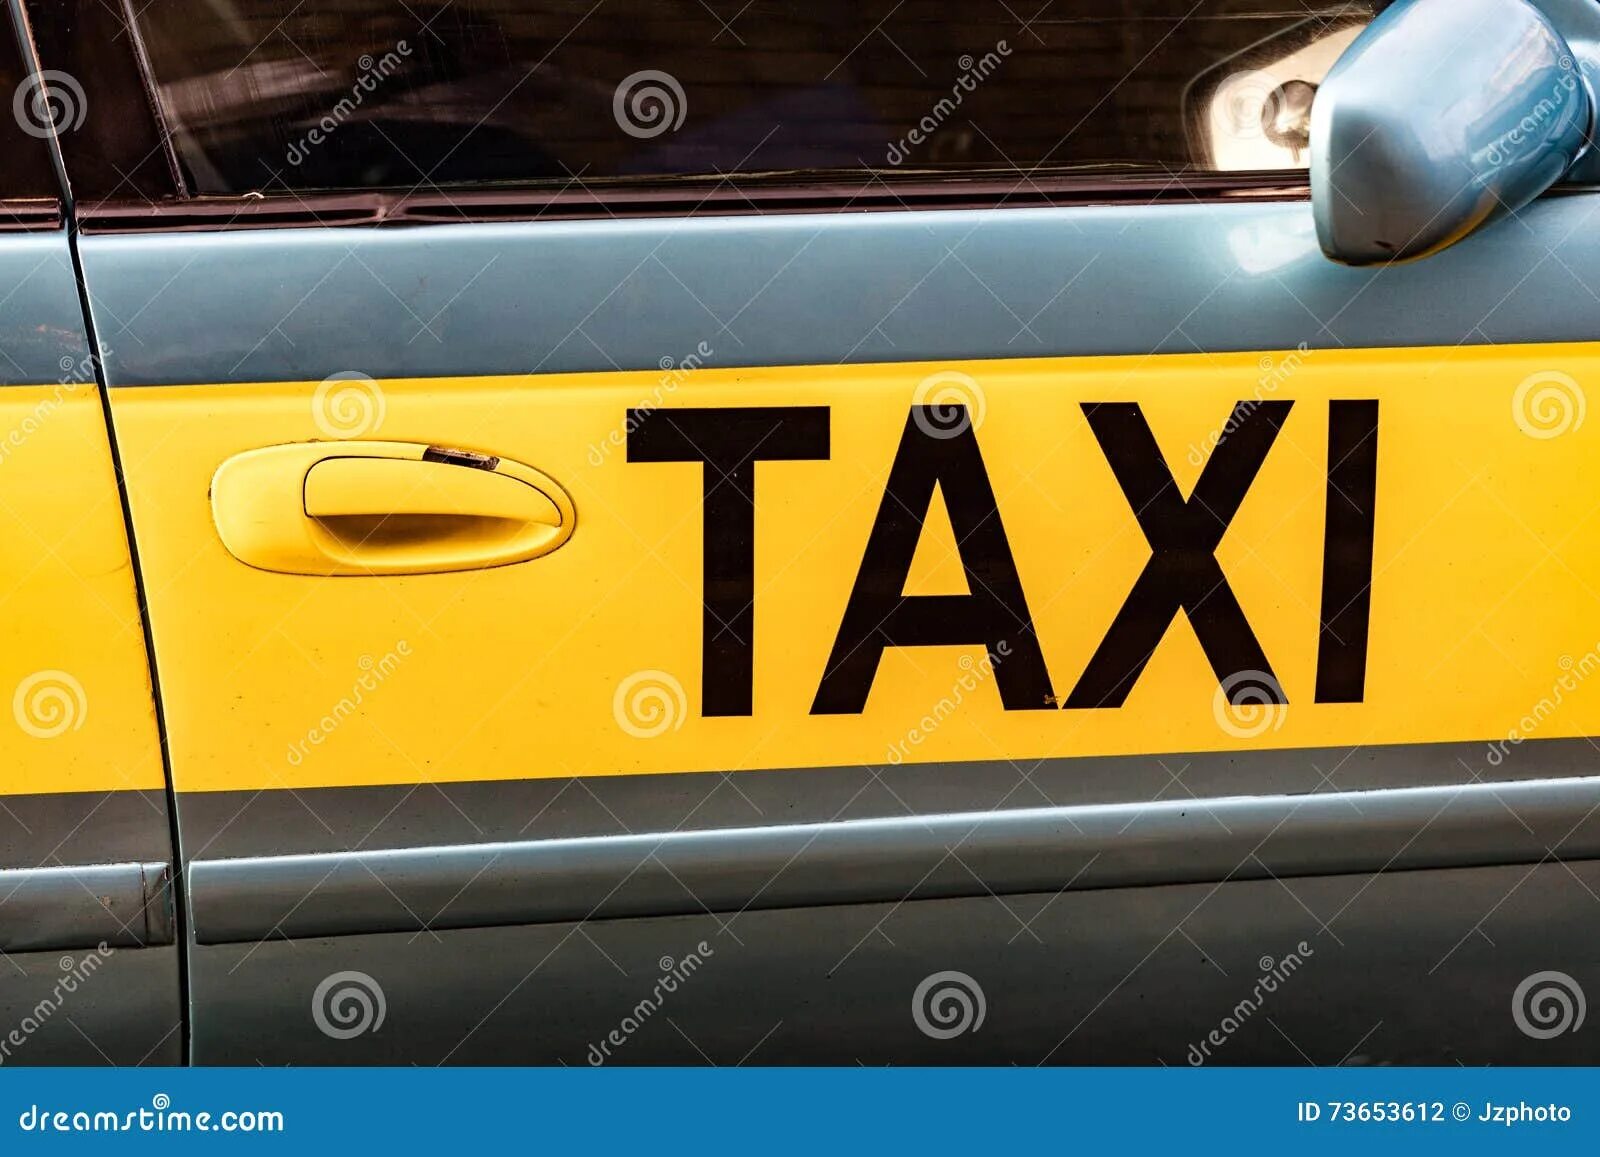 Сравни написание слов такси. Дверь такси. Такси по английскому. Как по английски такси. Как написать такси на английском.